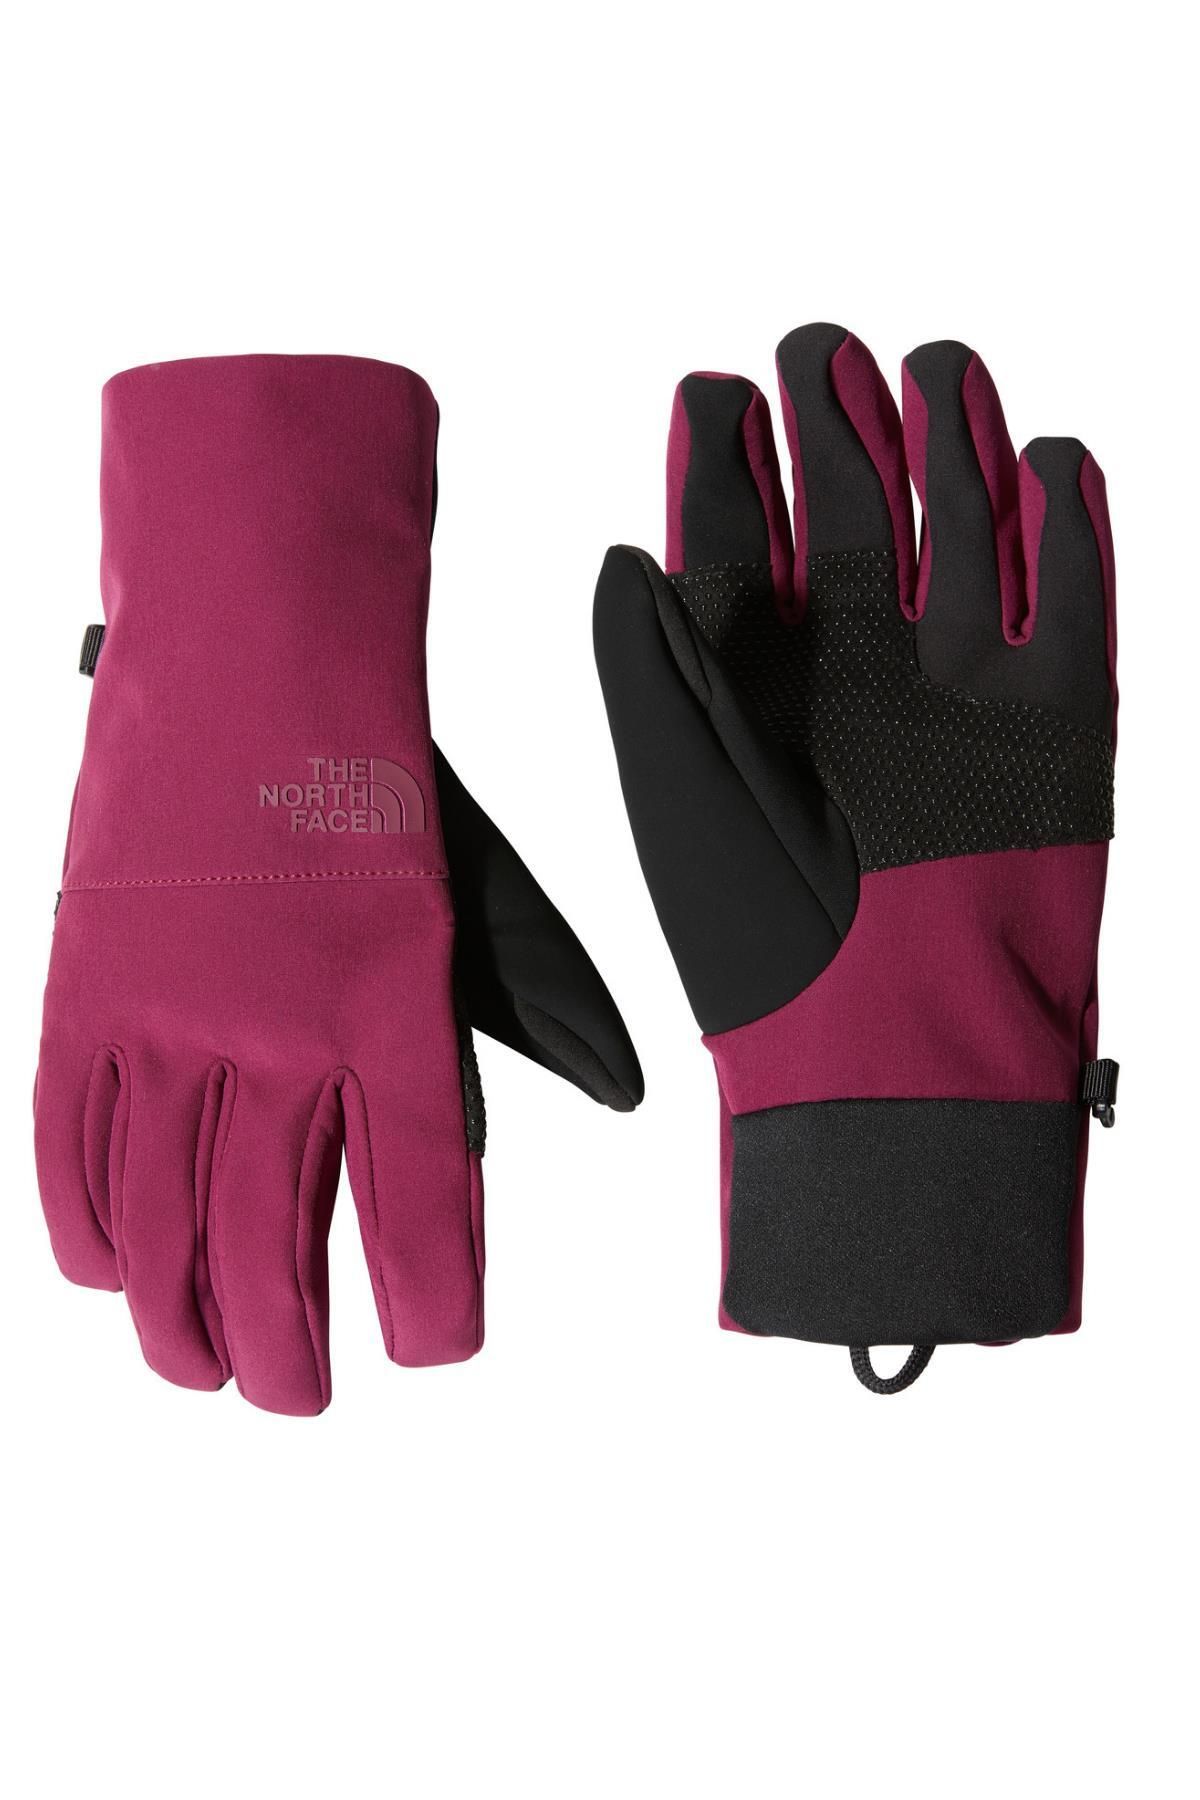 The North Face Kadın Apex Etip Glove